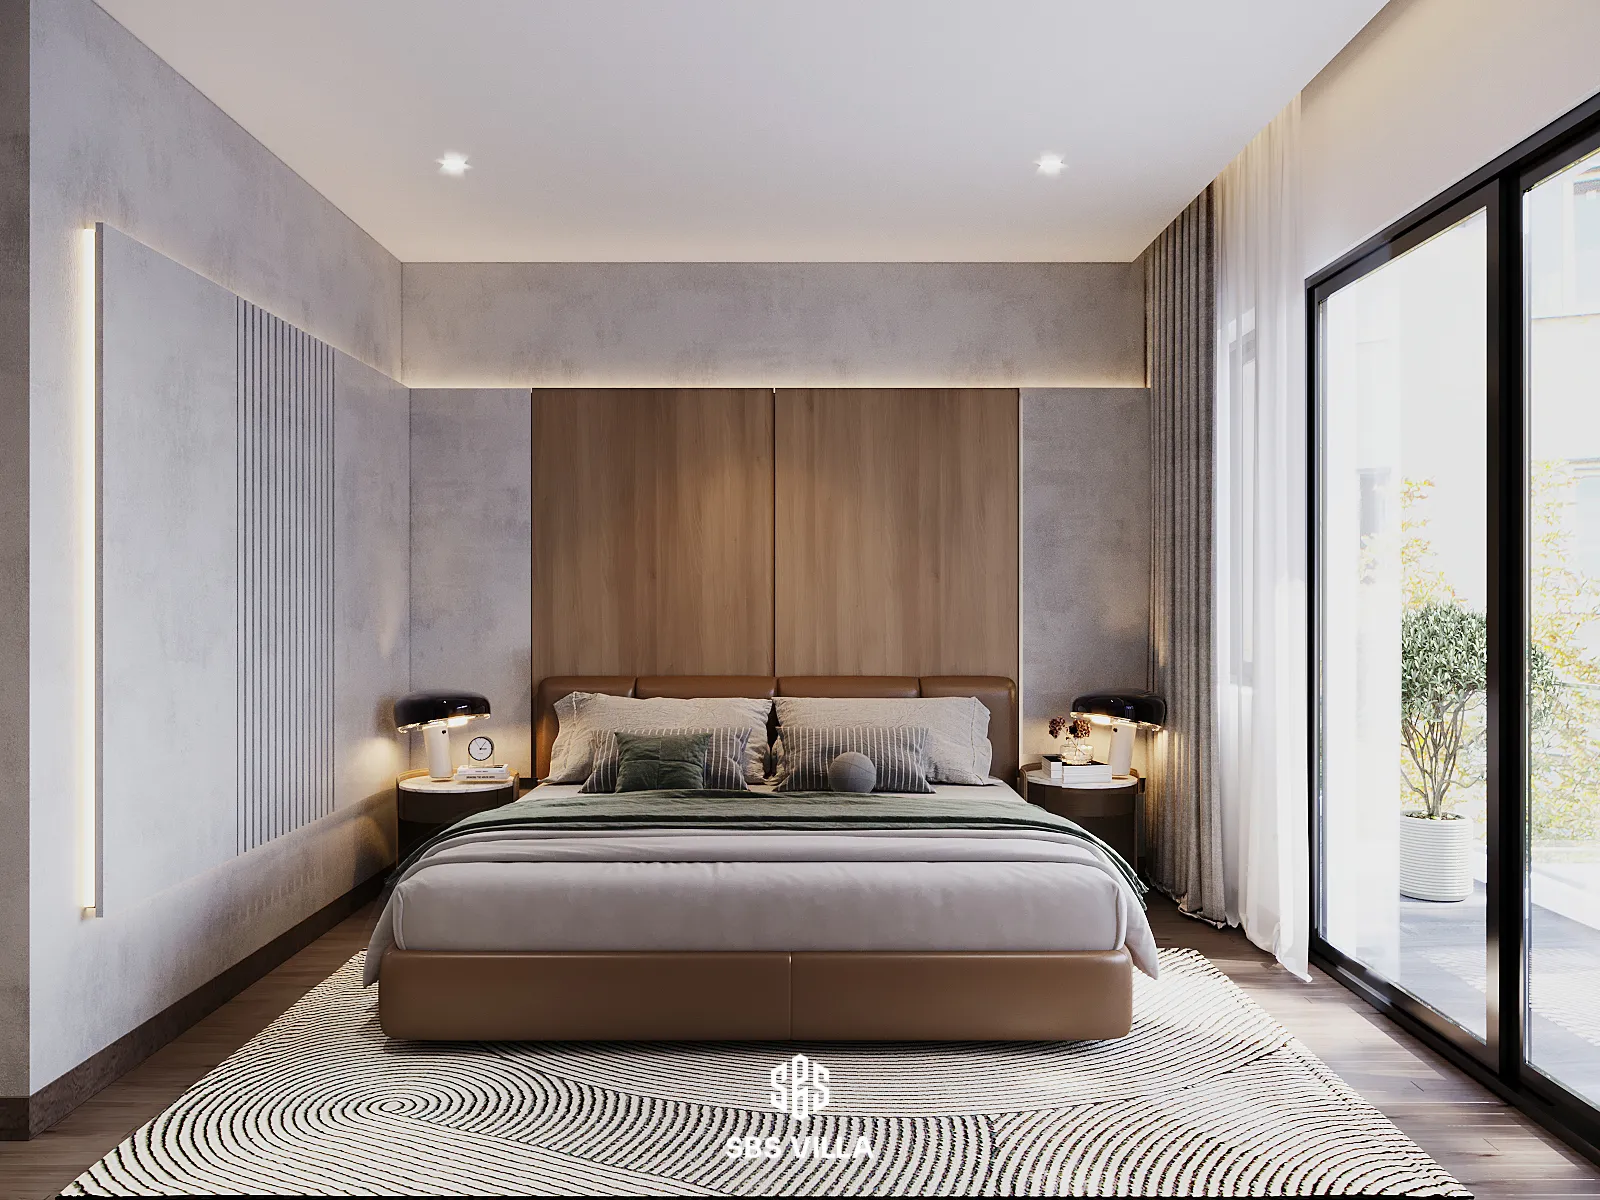 Thiết kế phòng ngủ mang tone nền xám-nâu trầm tĩnh 